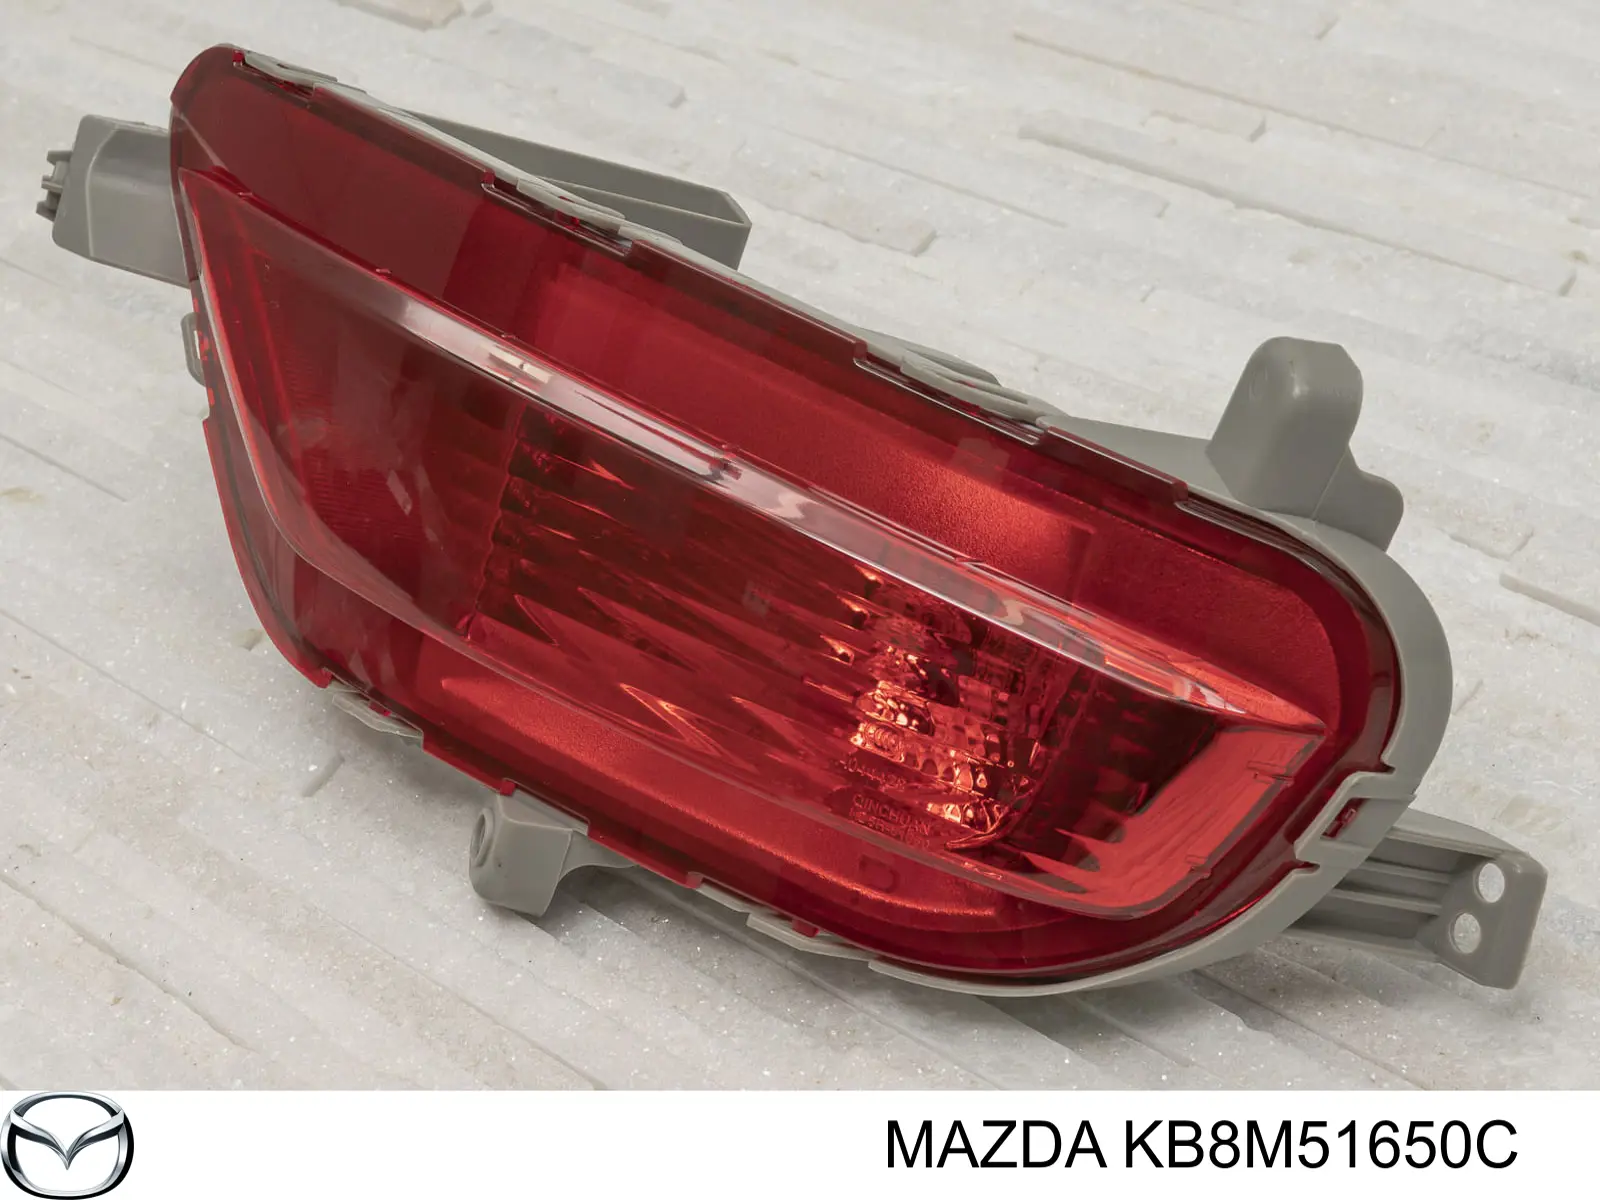 KB8M51650C Mazda lanterna do pára-choque traseiro direito